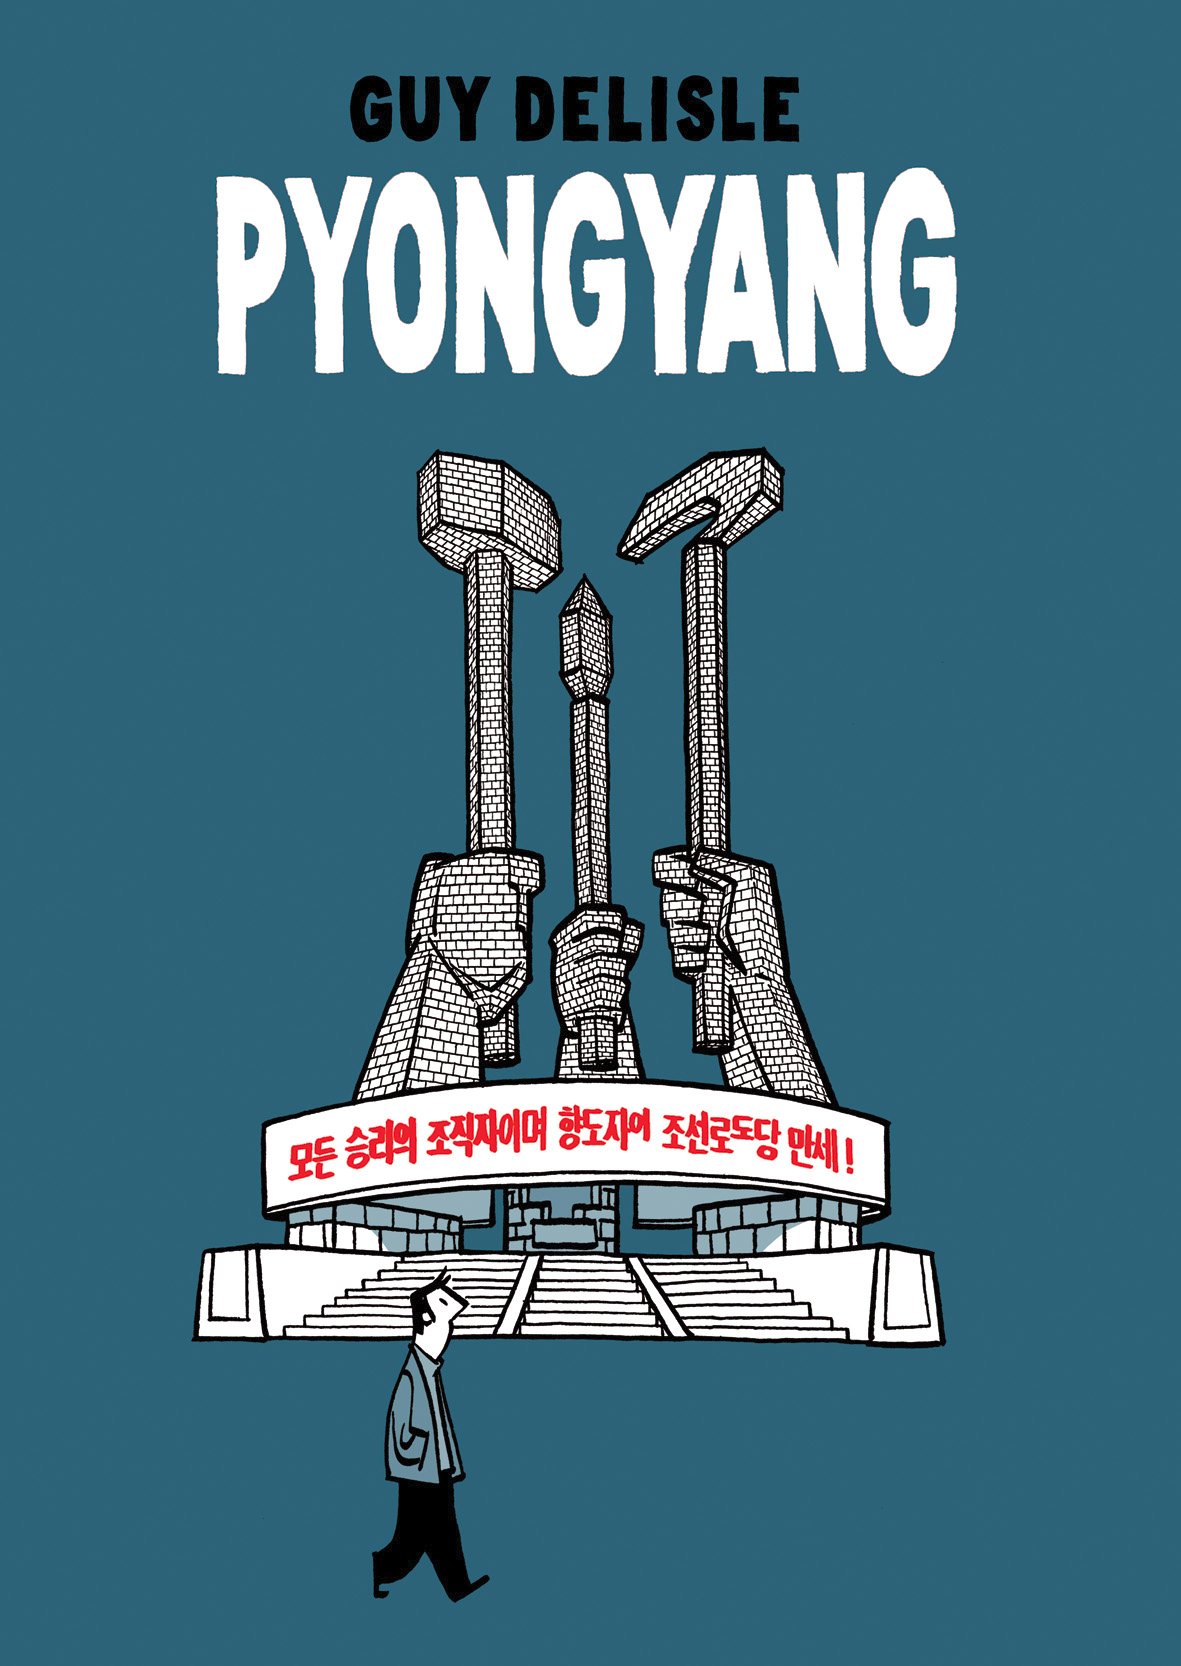 Guy Delisle: Pyongyang (GraphicNovel, Gaztelania language, 2004, Astiberri)